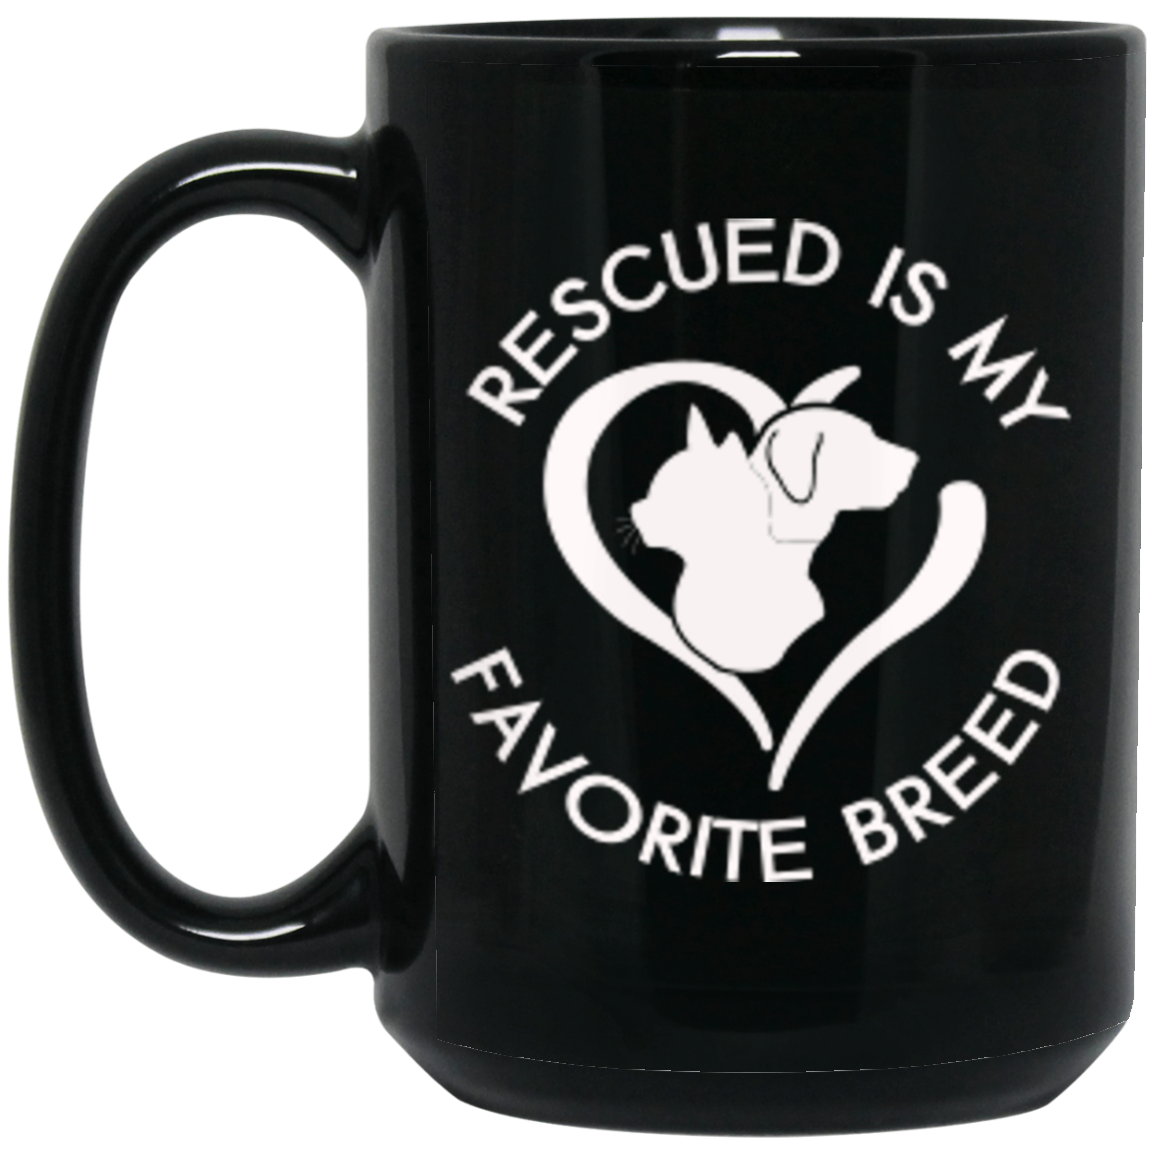 Rescued Favorite Breed - Black Mugs